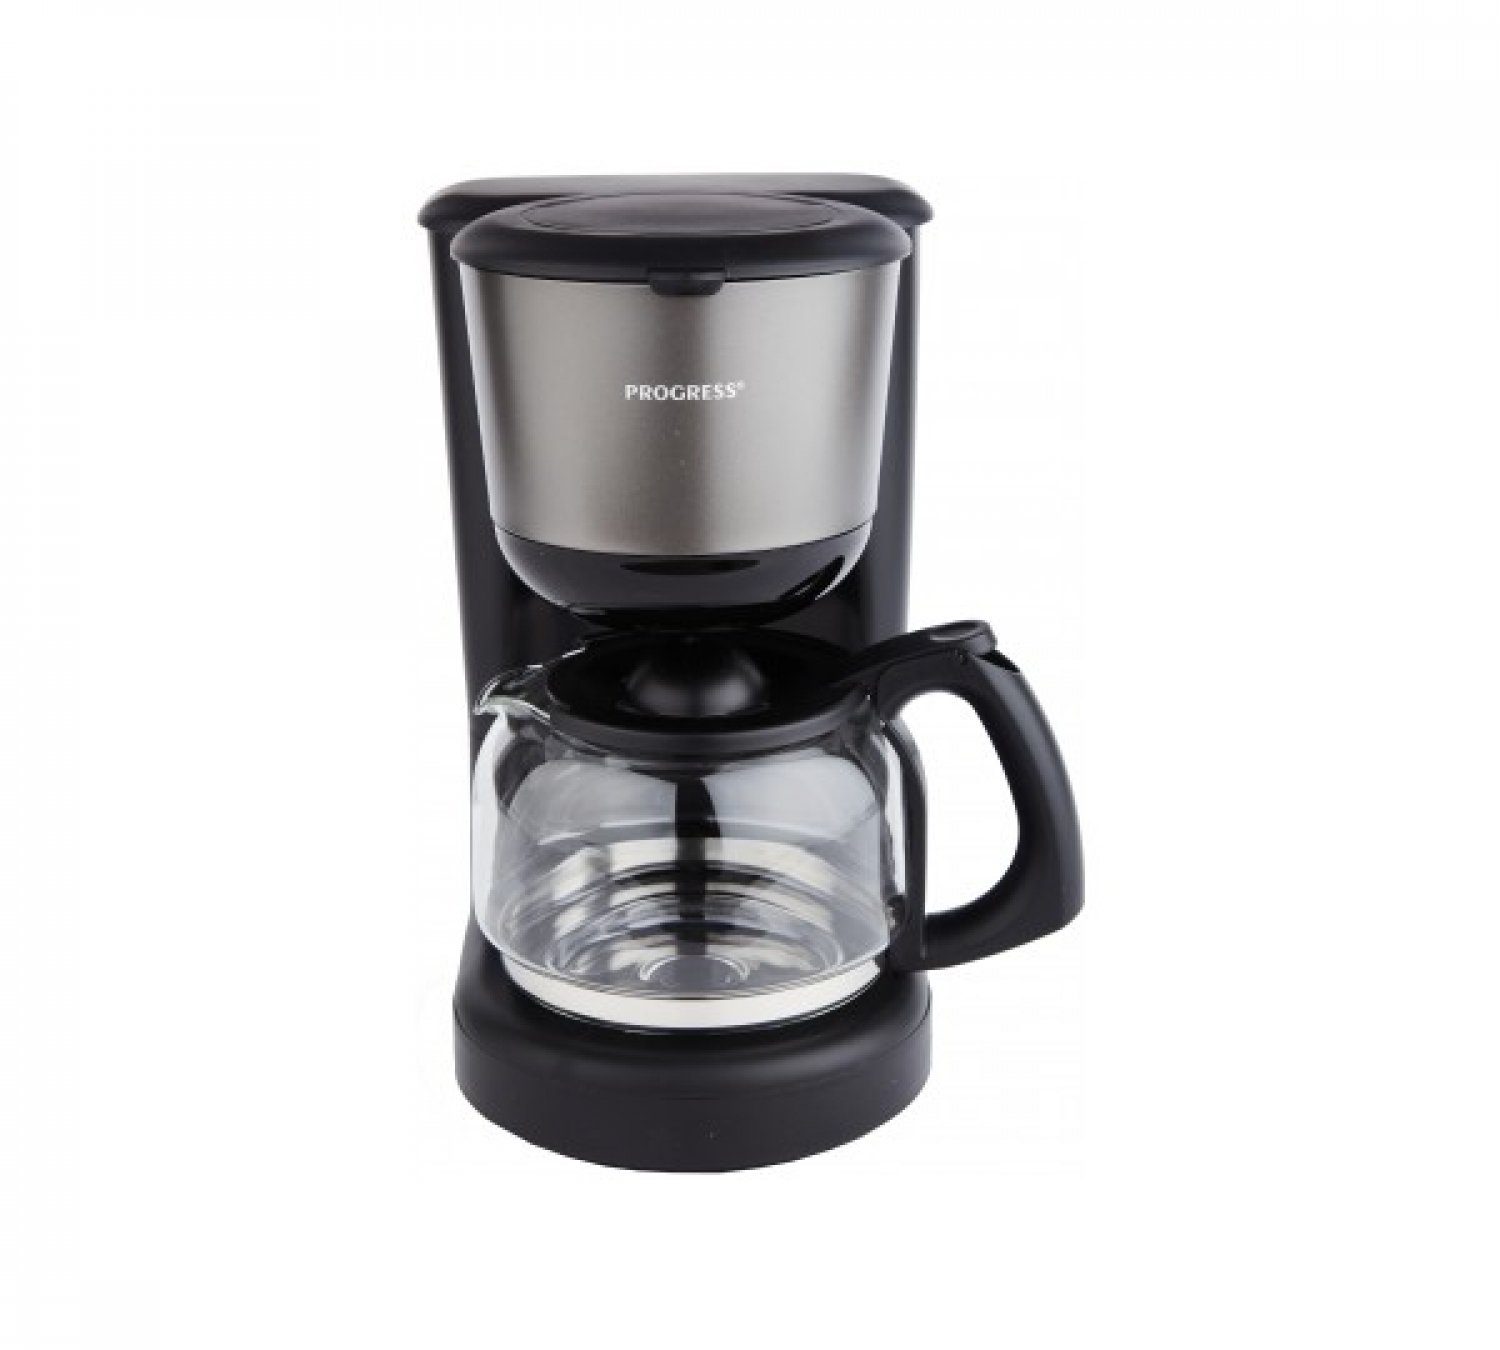 Progress Filterkaffeemaschine PROGRESS Filter Kaffe-Maschine 1080 W Kaffeekocher 10 Tassen Schwarz 1,25 L | Filterkaffeemaschinen